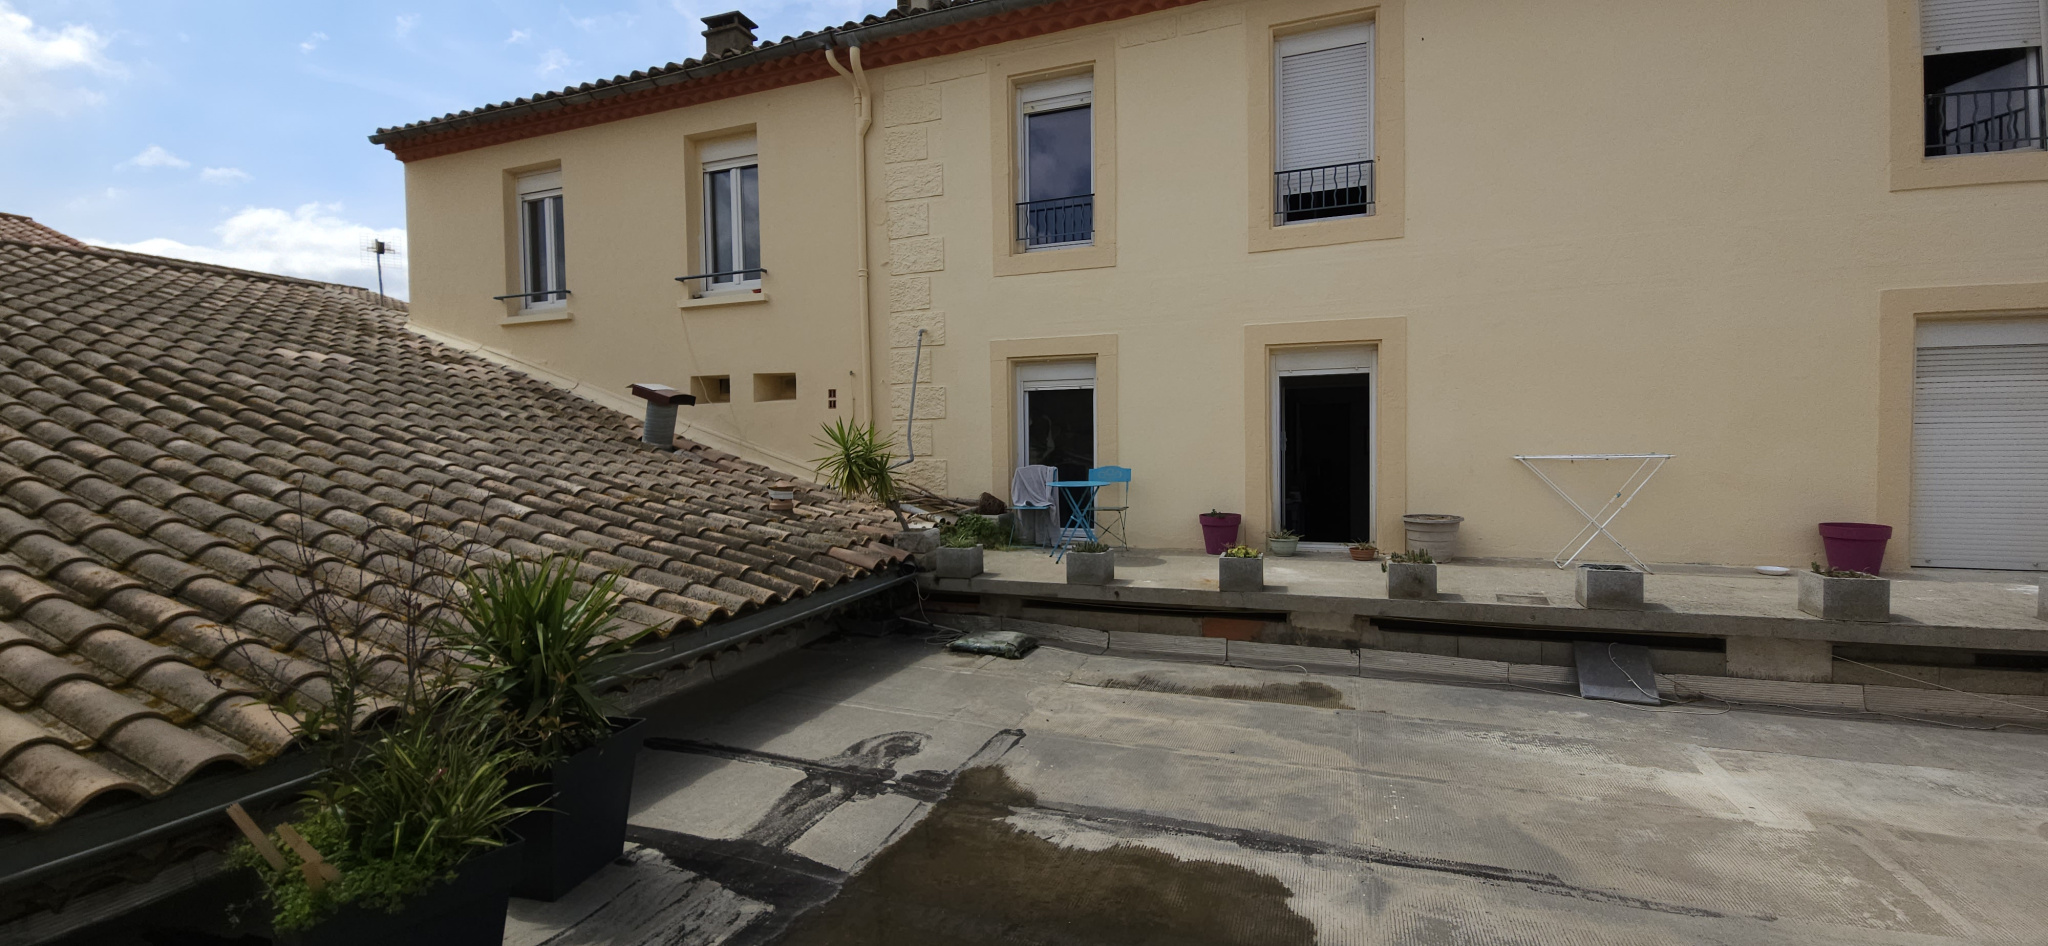 Appartement Appartement Lézignan-Corbières 85000€ Grimois Immobilier